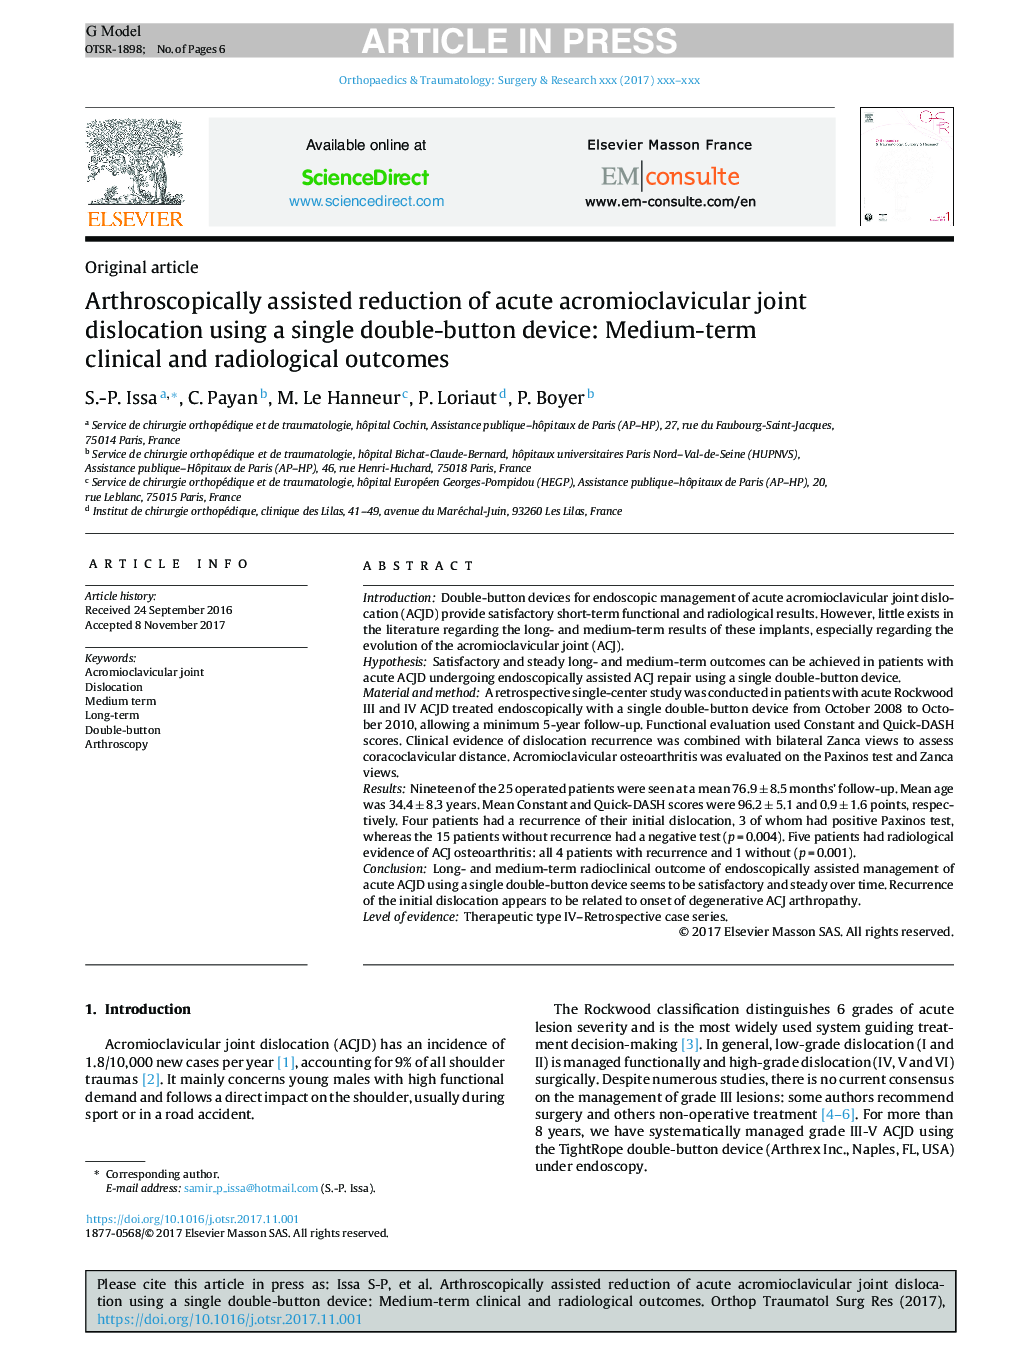 کاهش آرتروسکوپی از جابجایی مفصلی جوش آکرومیوکلوویکور حاد با استفاده از یک دستگاه دو دکمه ای ساده: نتایج کلینیکی و رادیولوژیک متوسط 